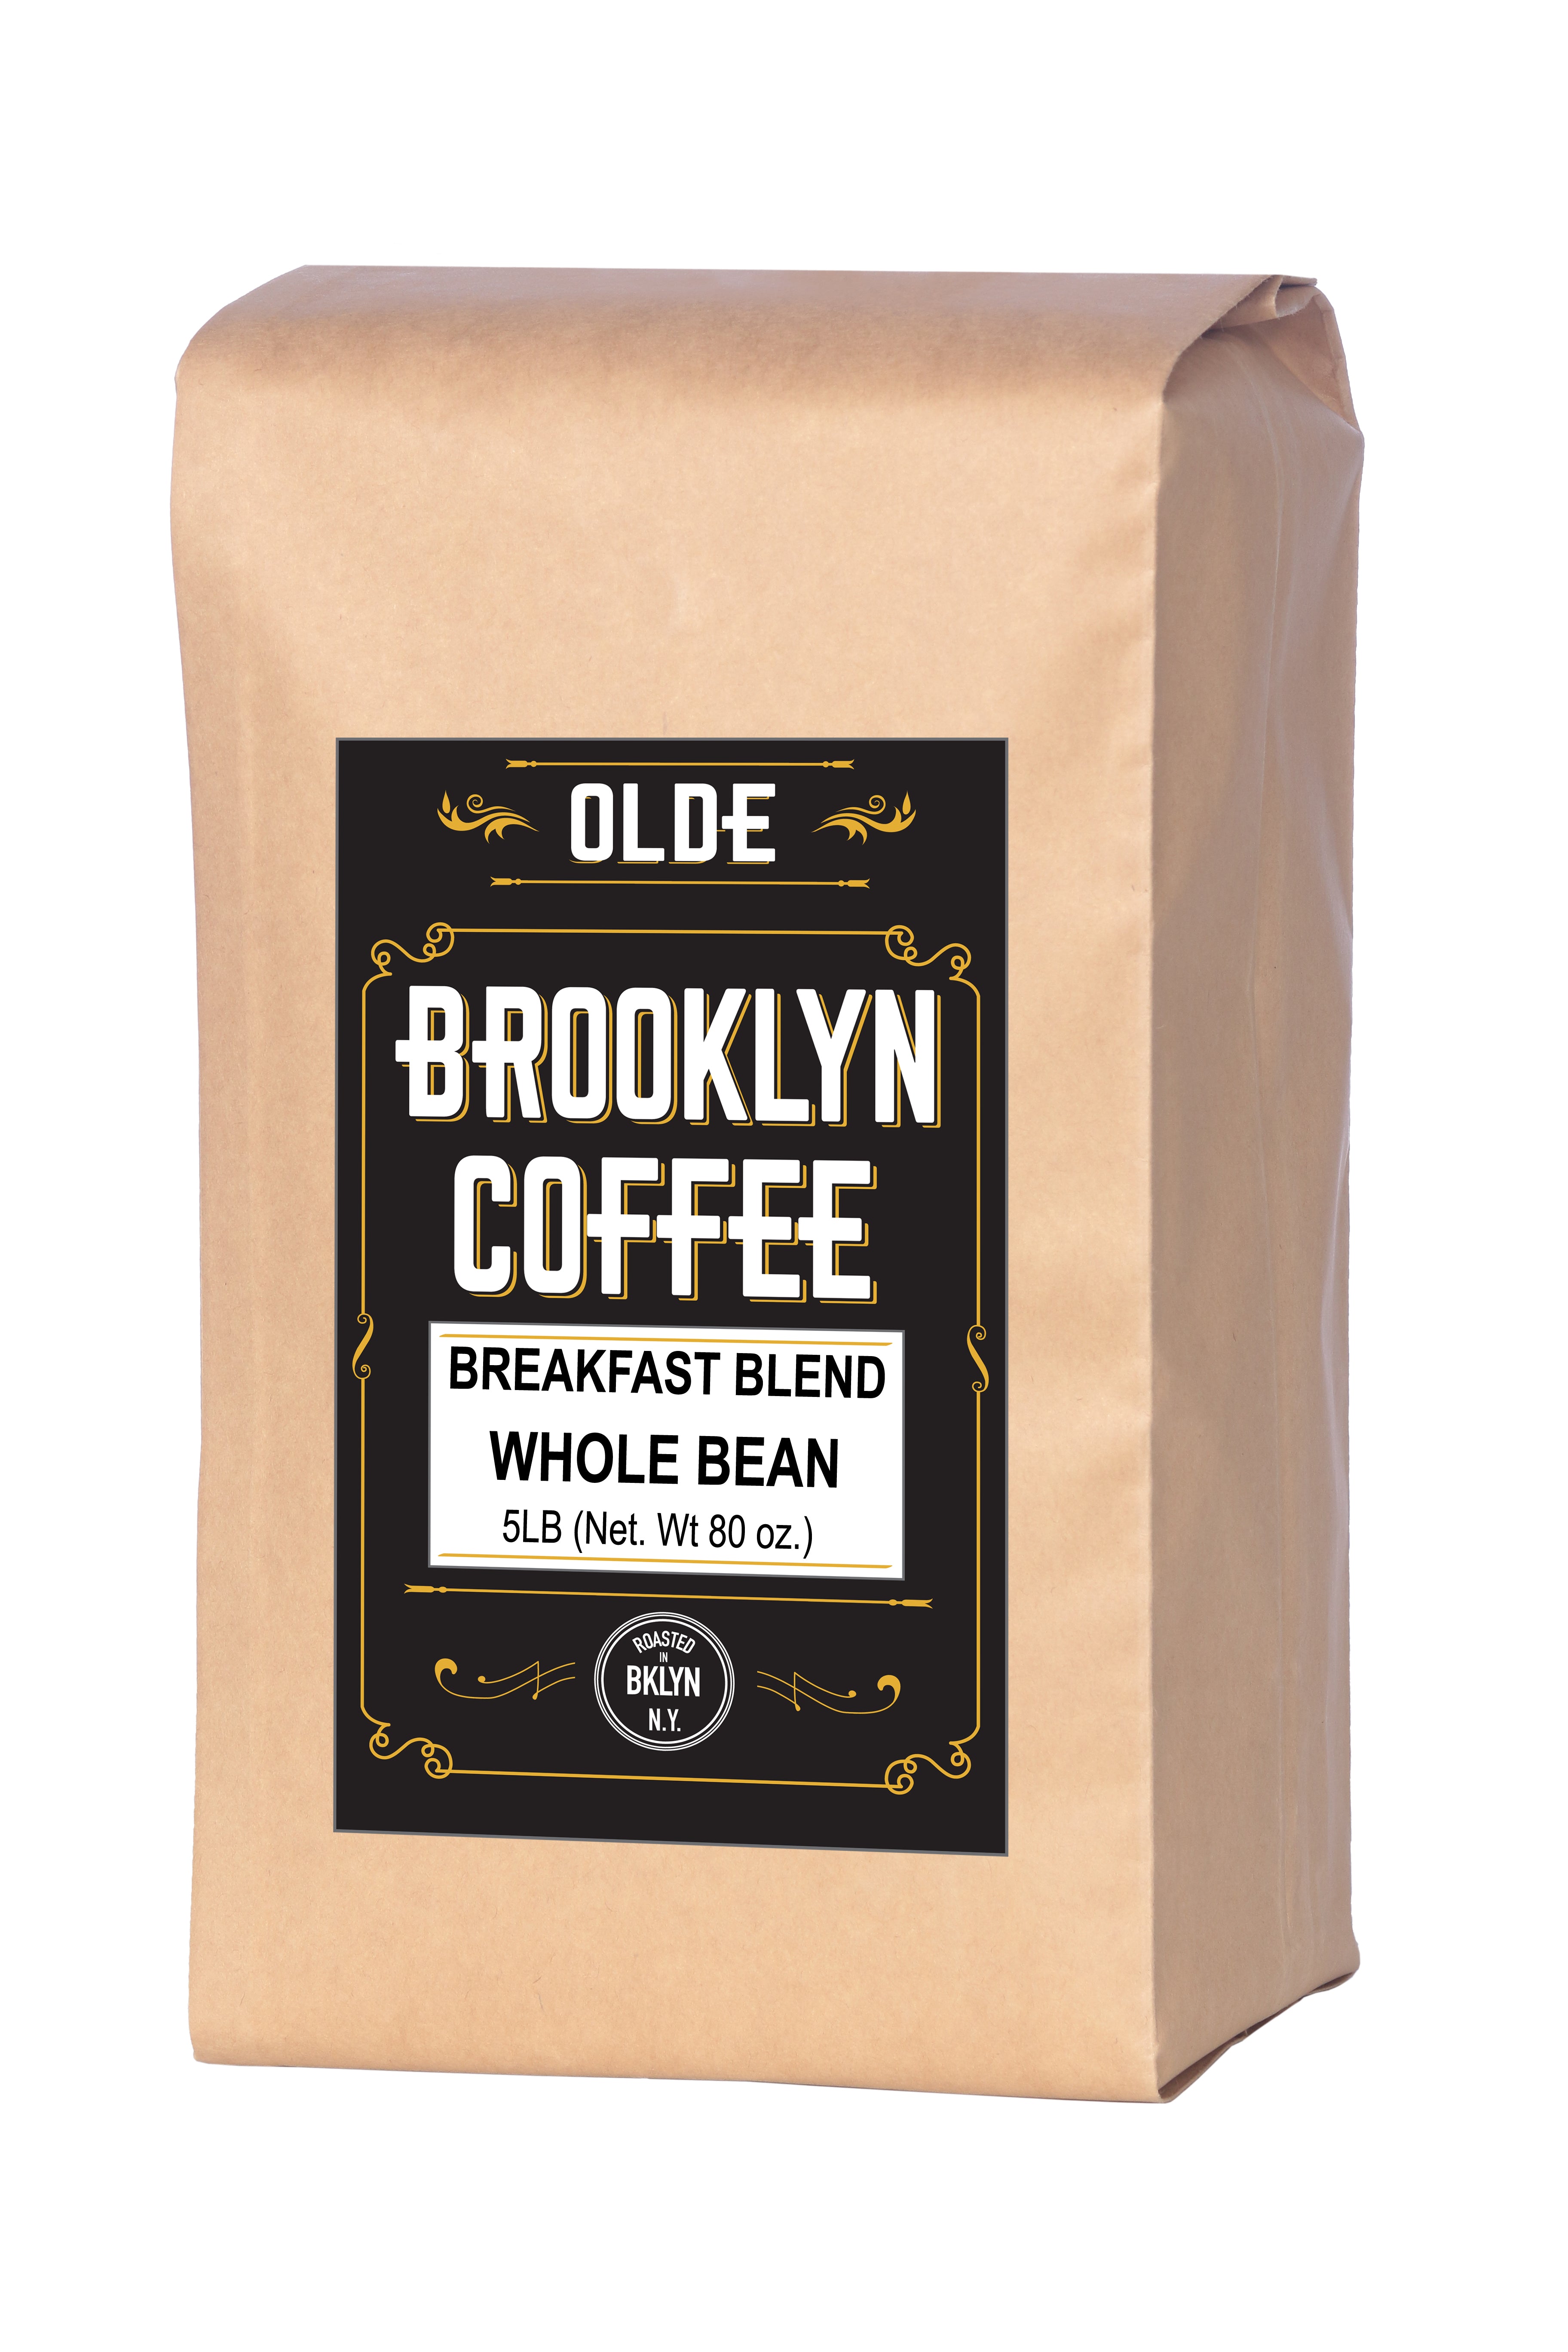 Olde Brooklyn Coffee,  BREAKFAST BLEND, Whole Bean Coffee